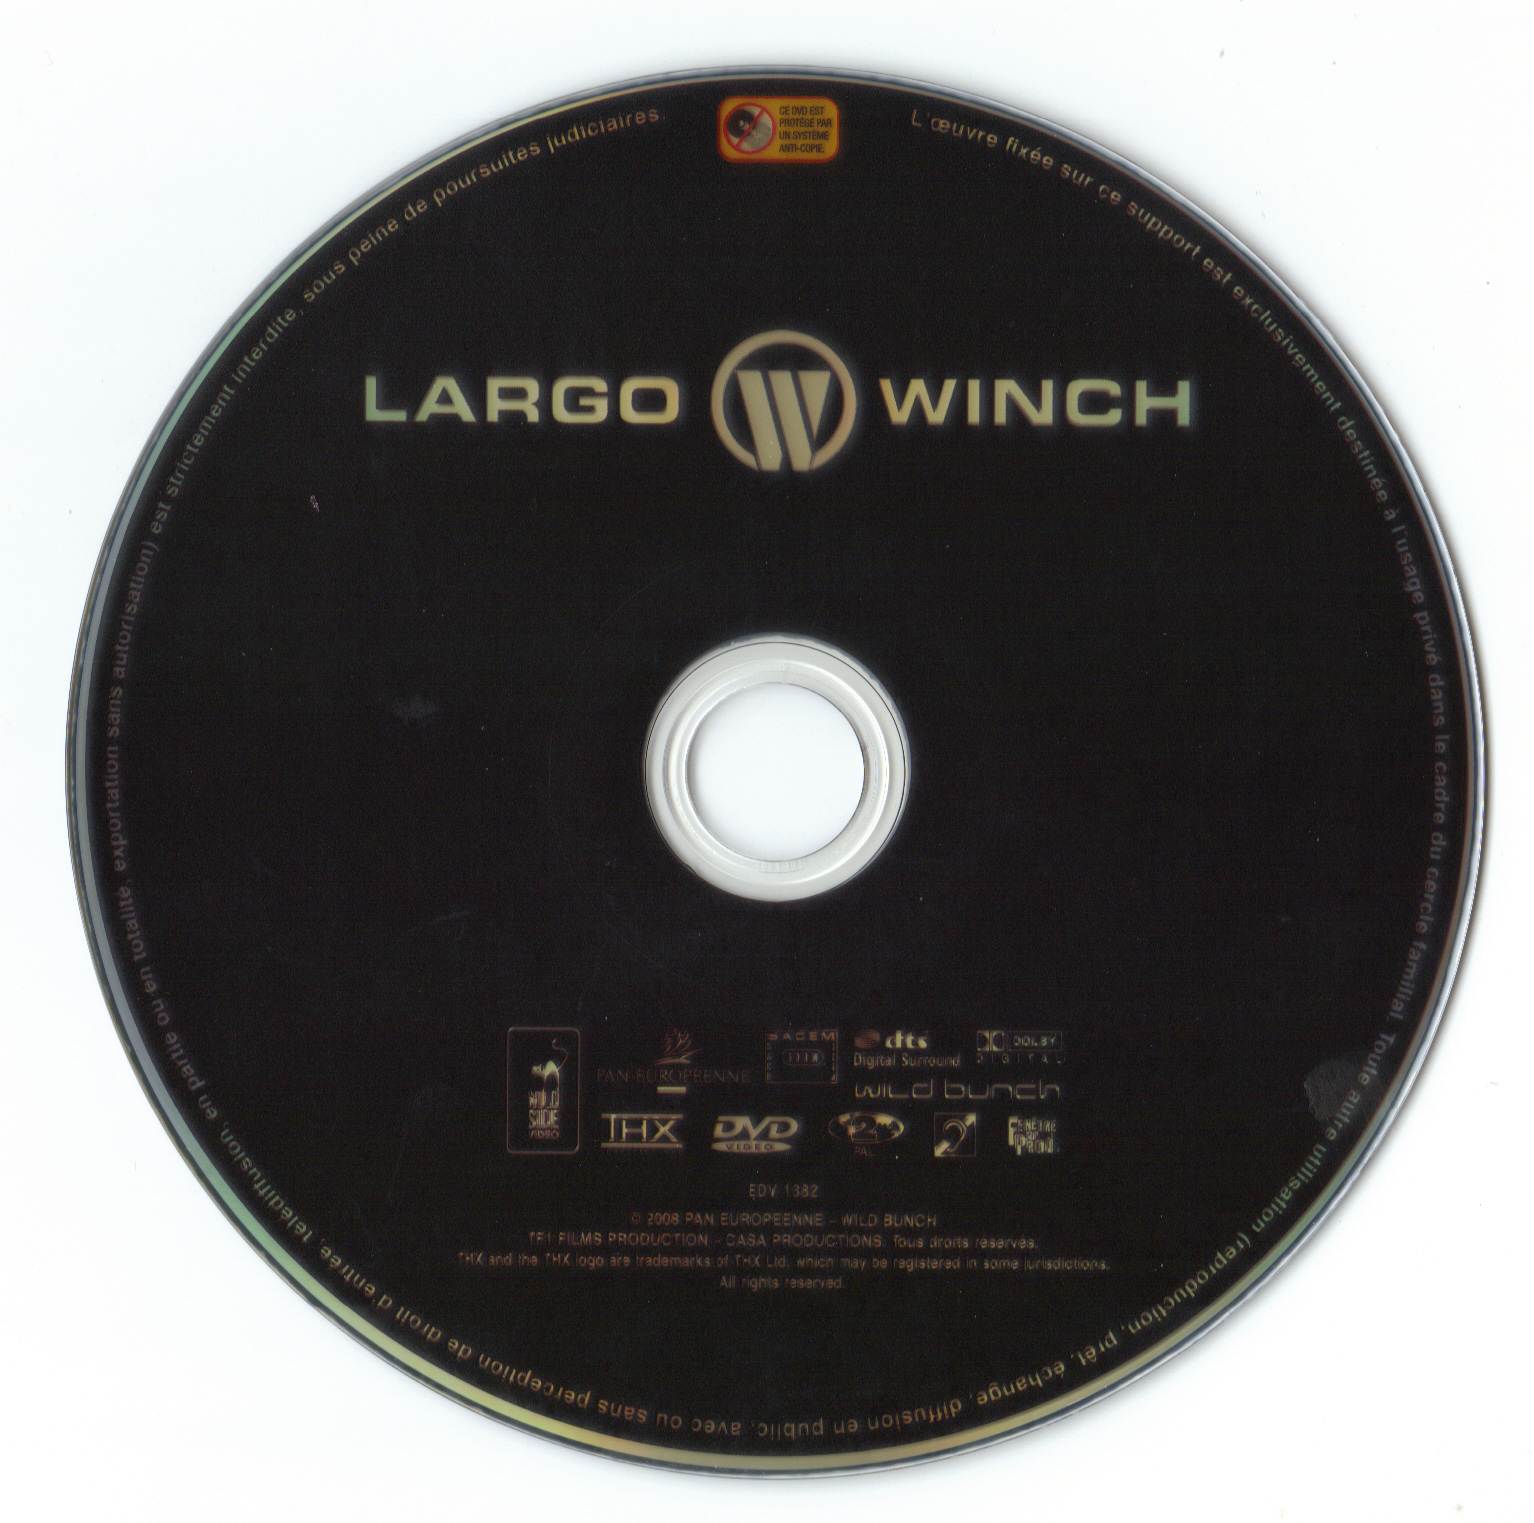 Largo Winch v2